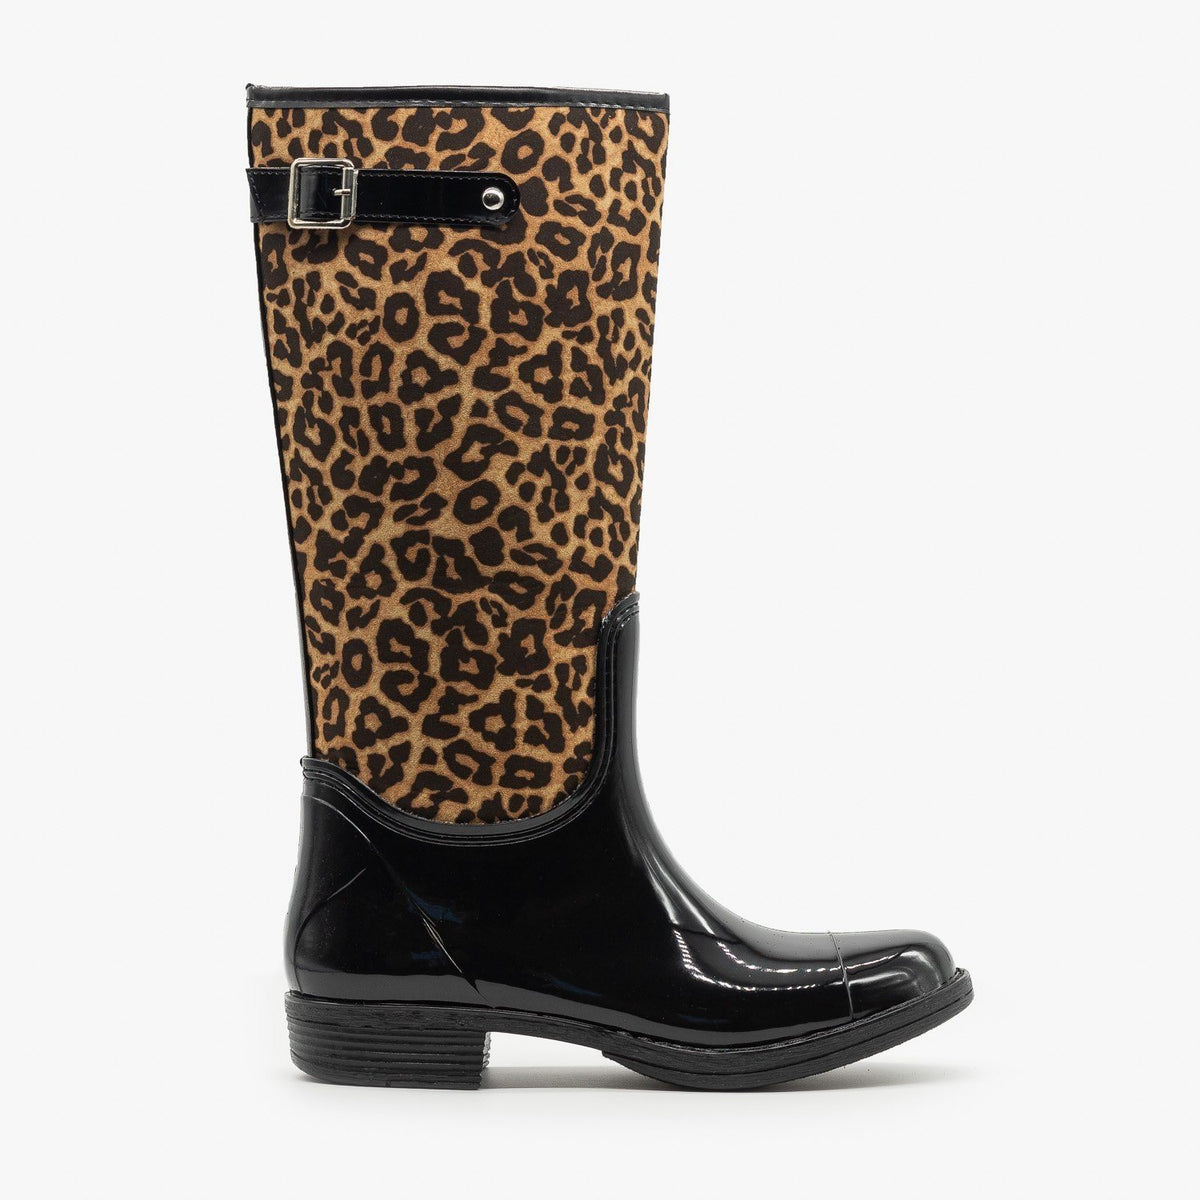 womens leopard print rain boots